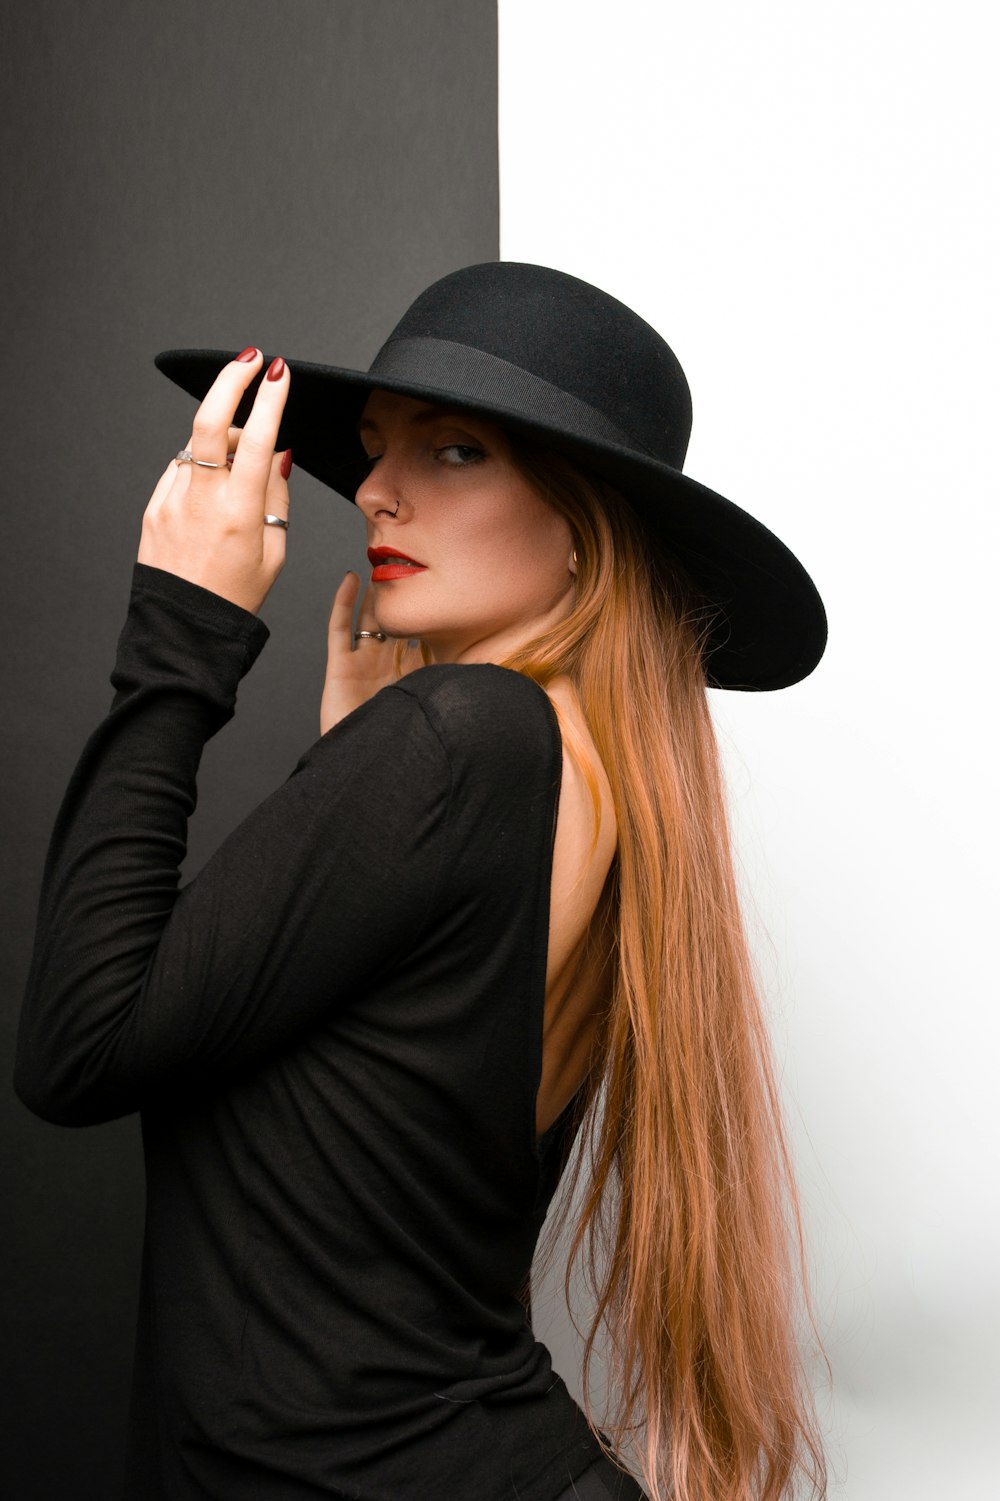 Eine Frau mit langen Haaren trägt einen schwarzen Hut